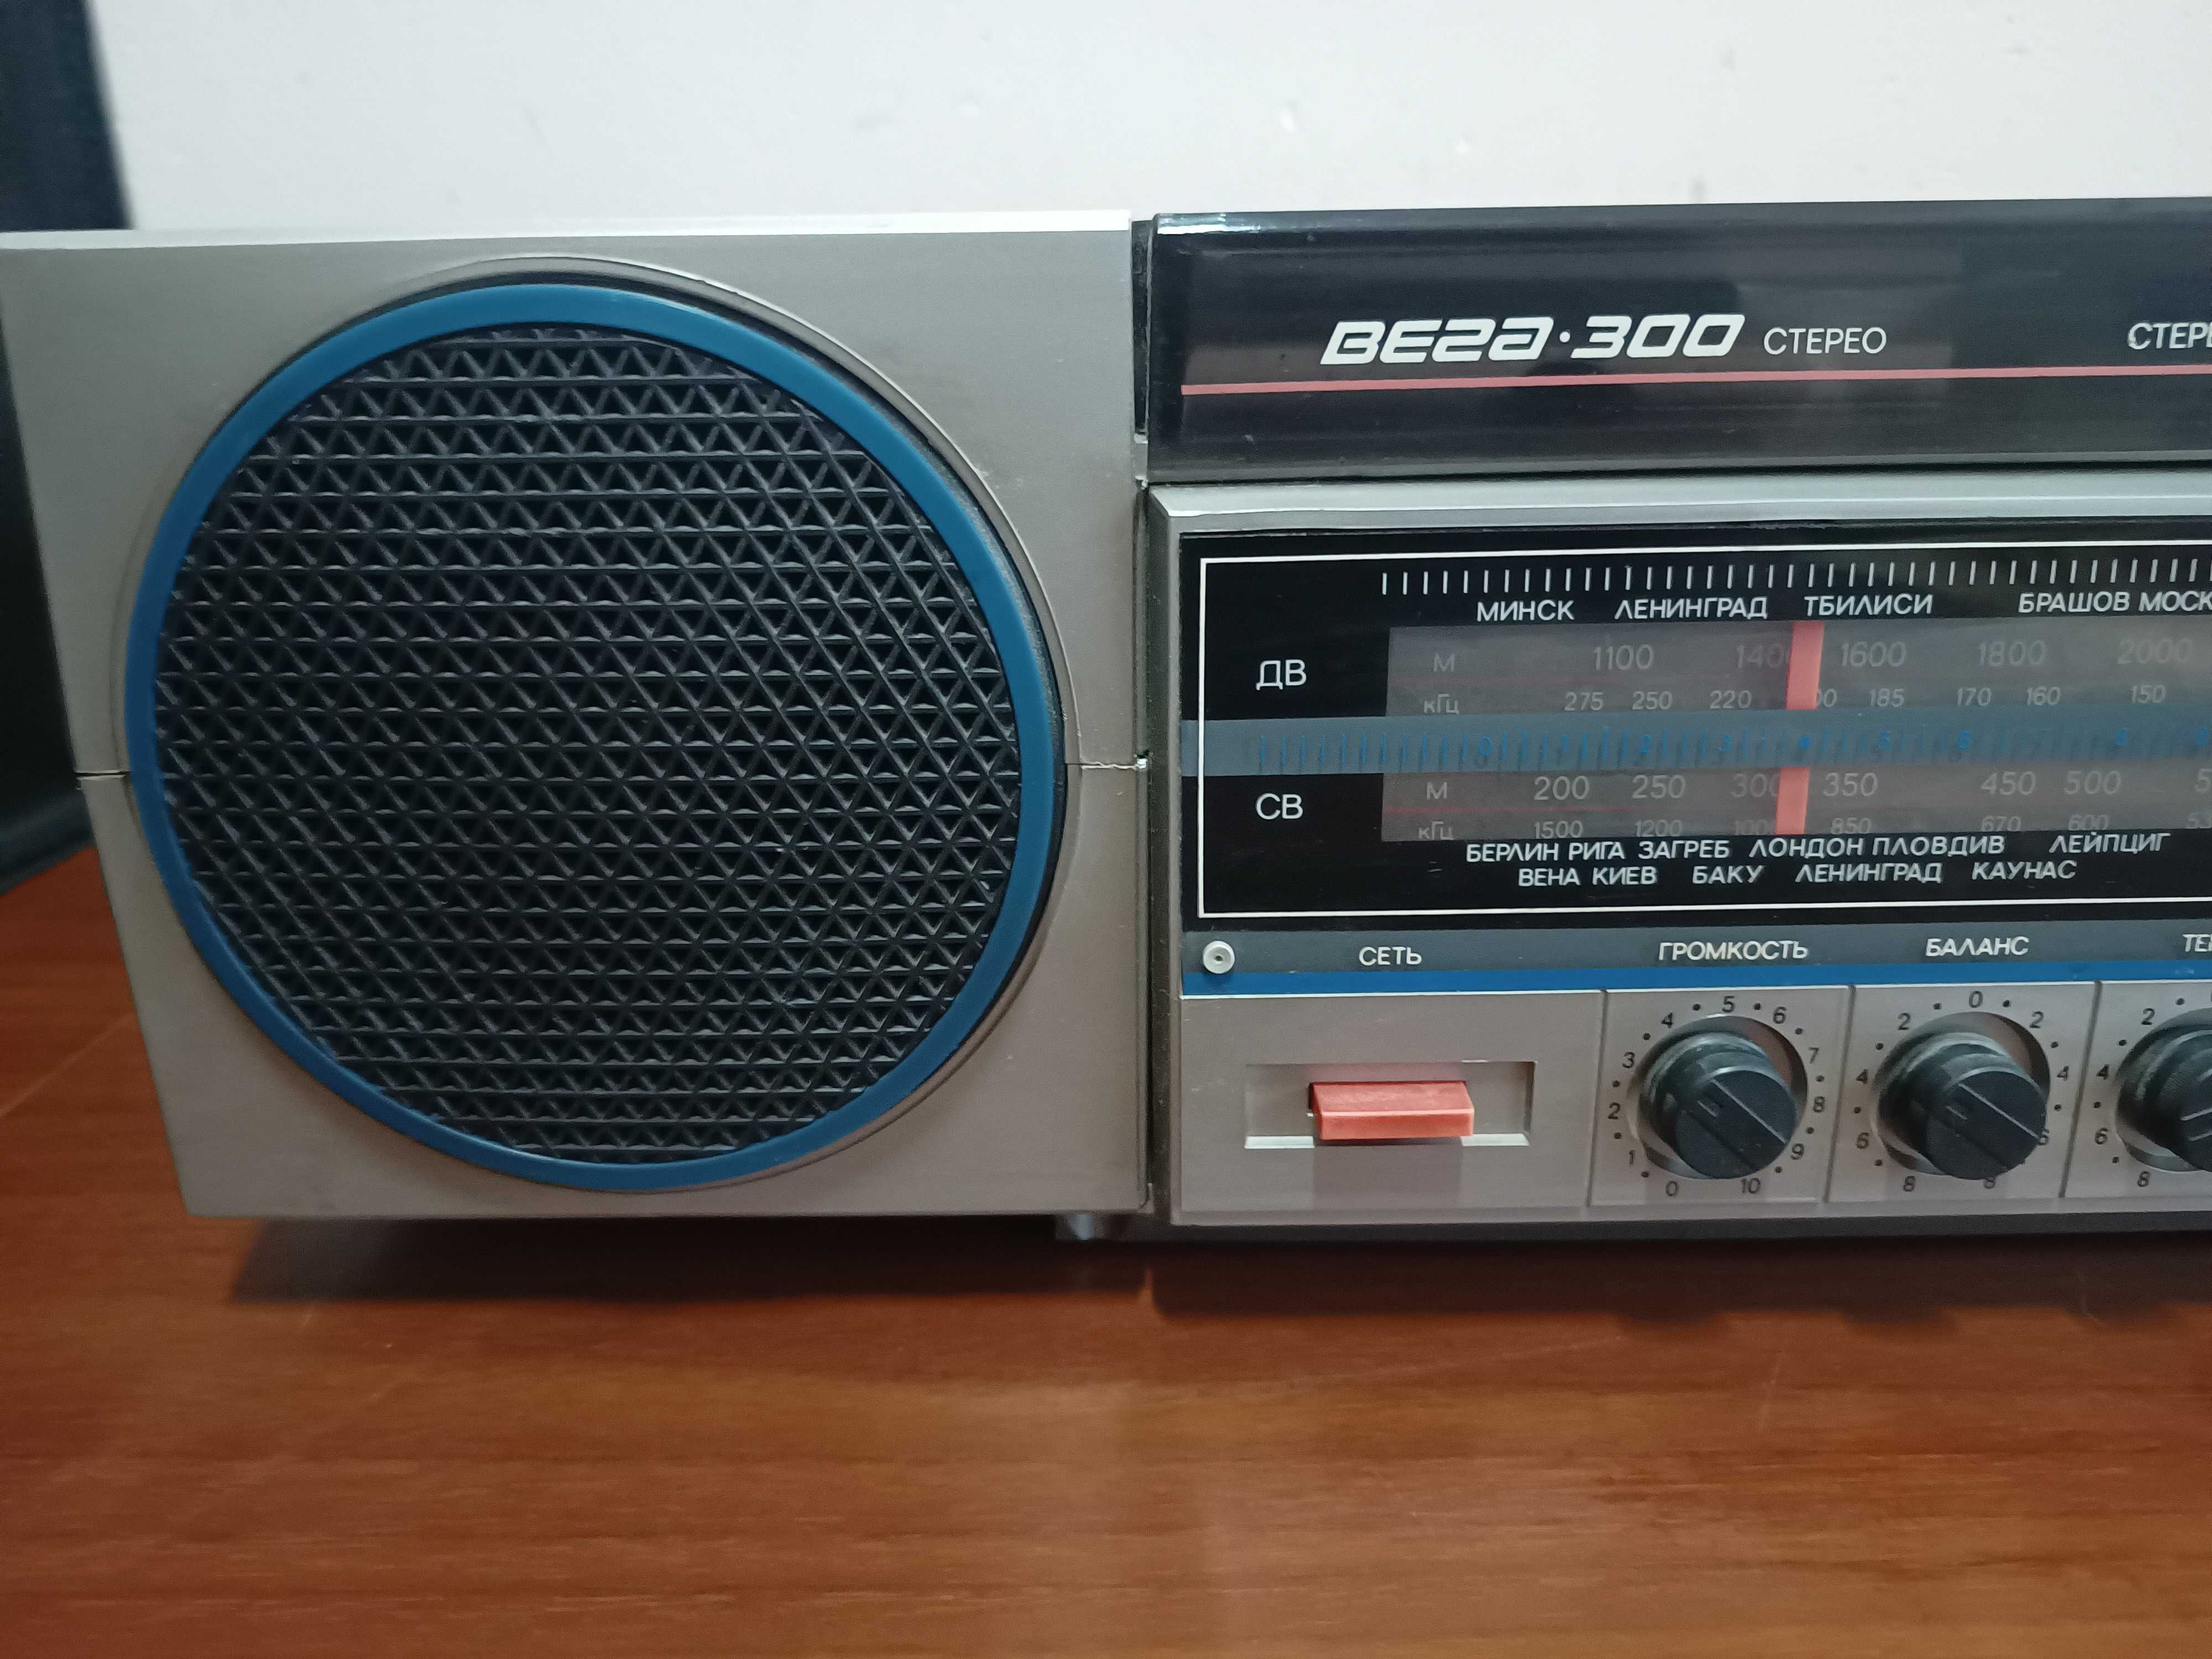 Radzieckie radio z gramofonem Wega 300 stereo z PRL